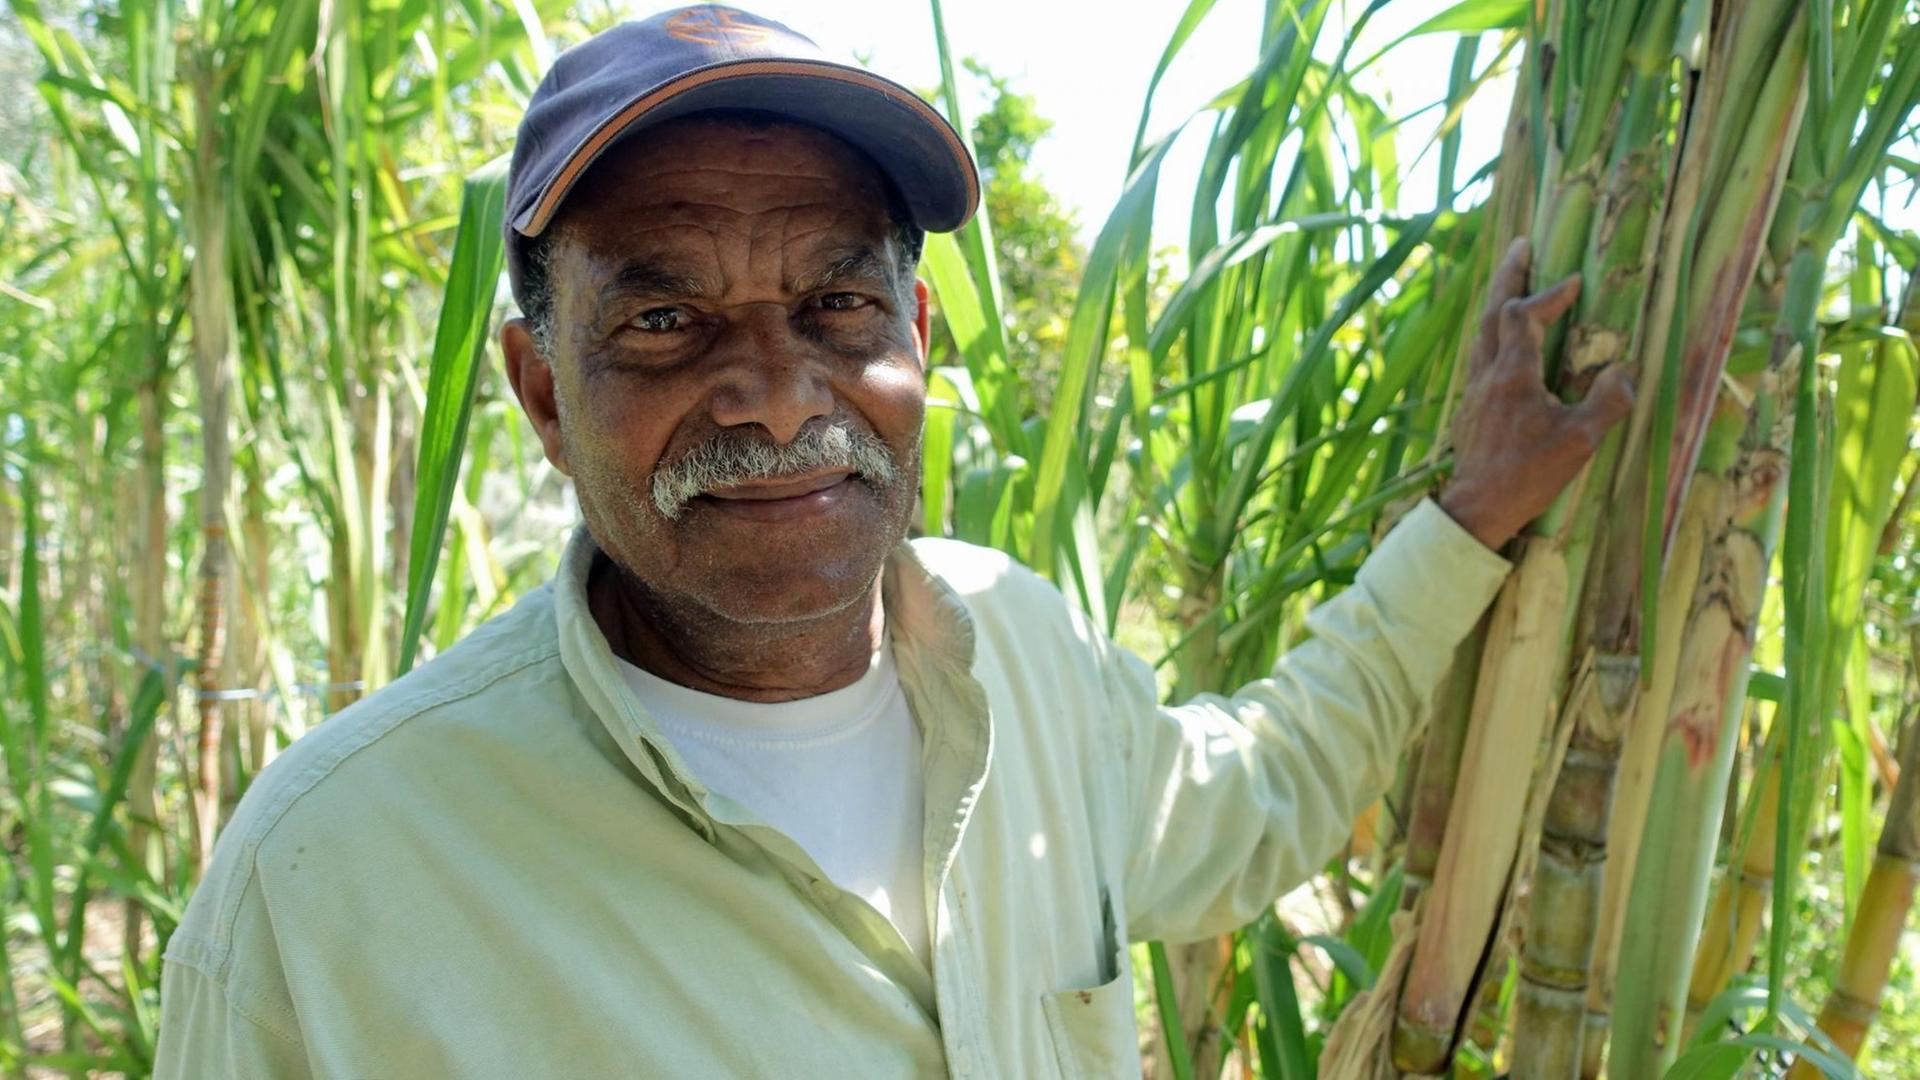 Ein Stückchen Kapverden in Lissabon: Manuel Santos vor Zuckerrohrpflanzen in seinem Garten